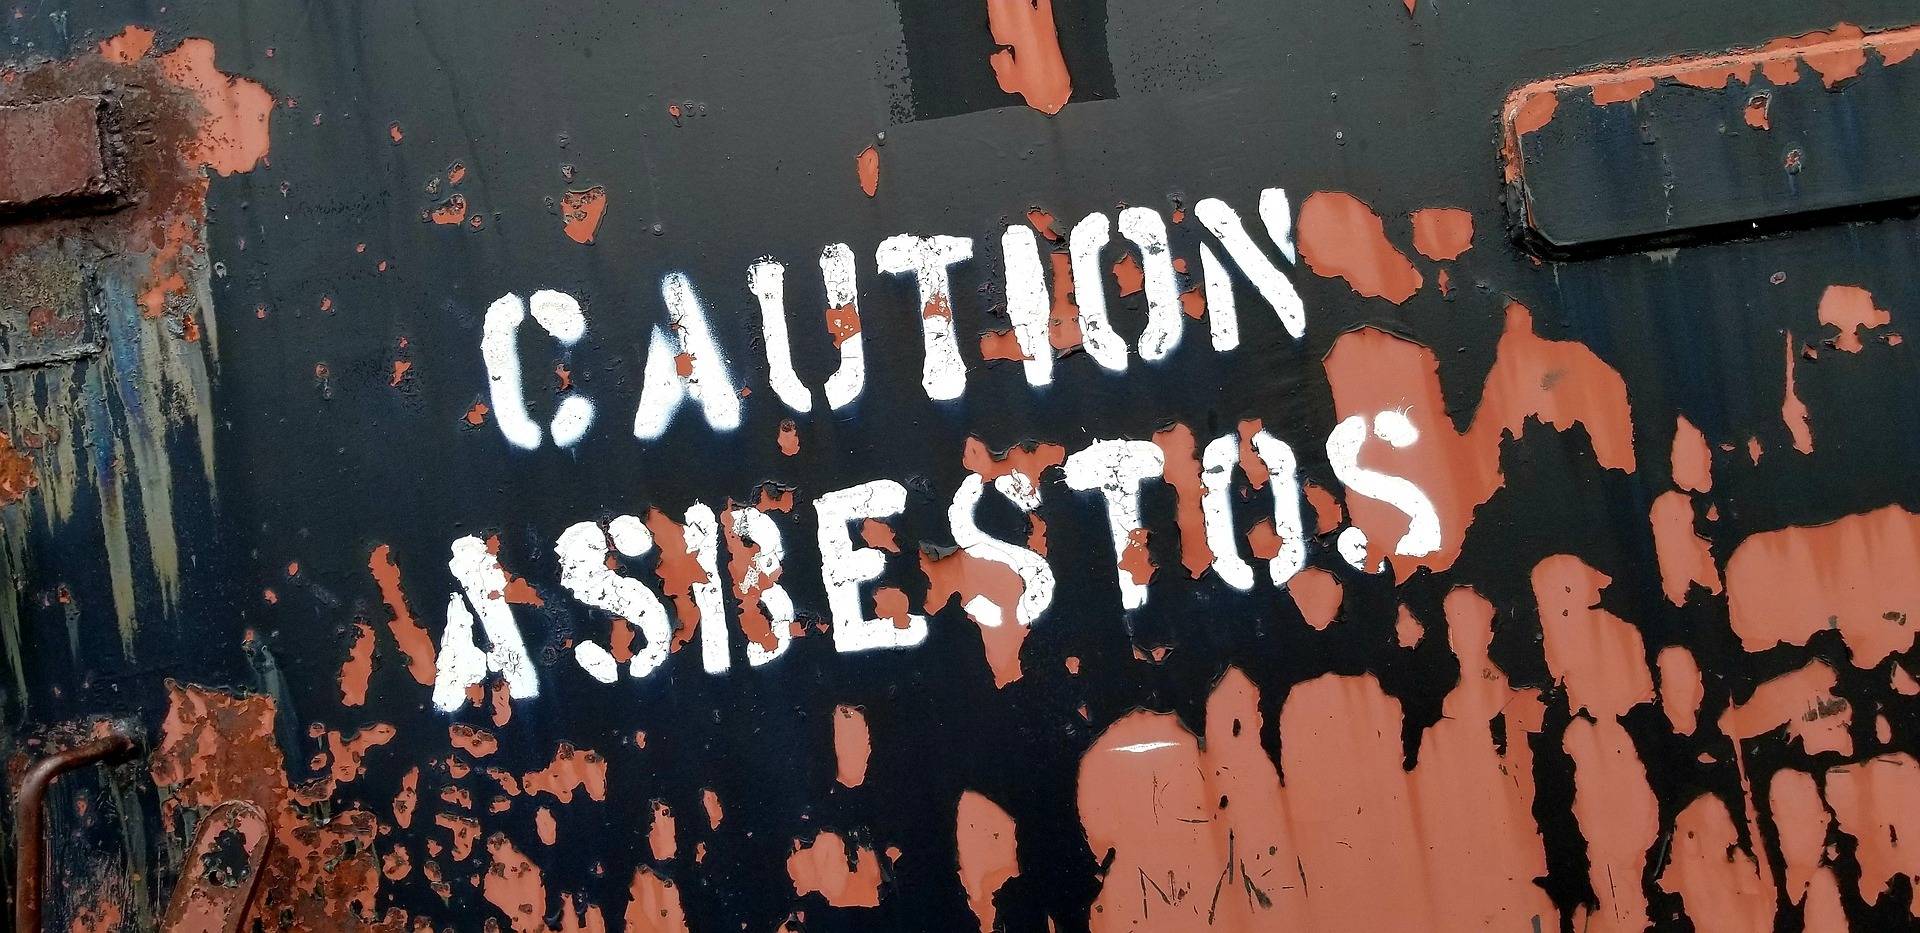 Unterschätzte Risiken: Asbest in privaten Räumen und Wohnhäusern